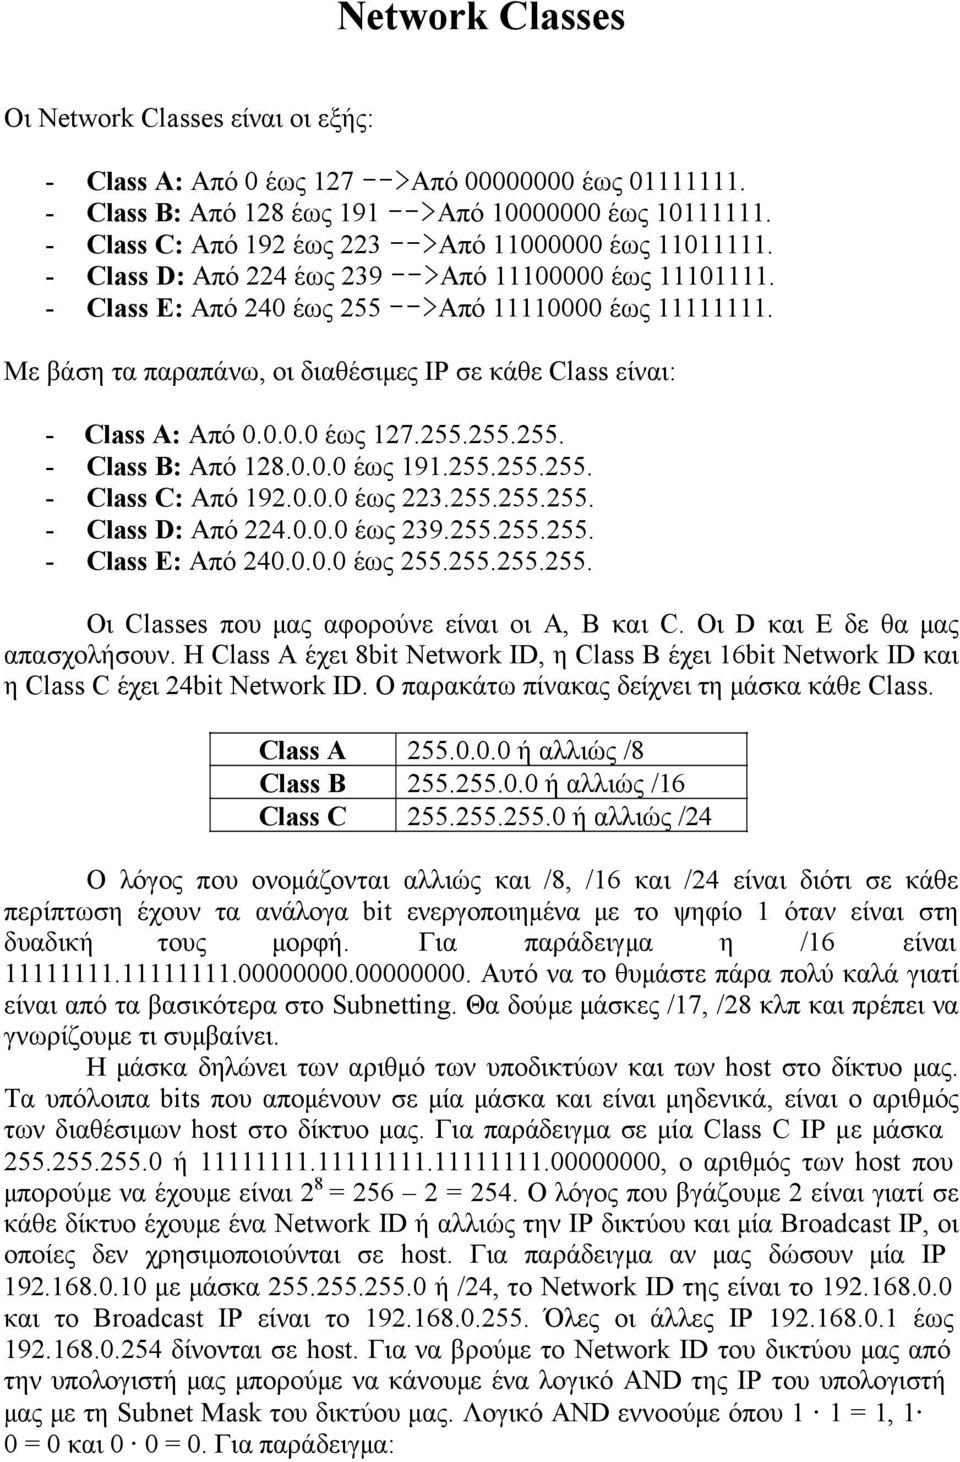 Με βάση τα παραπάνω, οι διαθέσιμες IP σε κάθε Class είναι: - Class A: Από 0.0.0.0 έως 127.255.255.255. - Class B: Από 128.0.0.0 έως 191.255.255.255. - Class C: Από 192.0.0.0 έως 223.255.255.255. - Class D: Από 224.